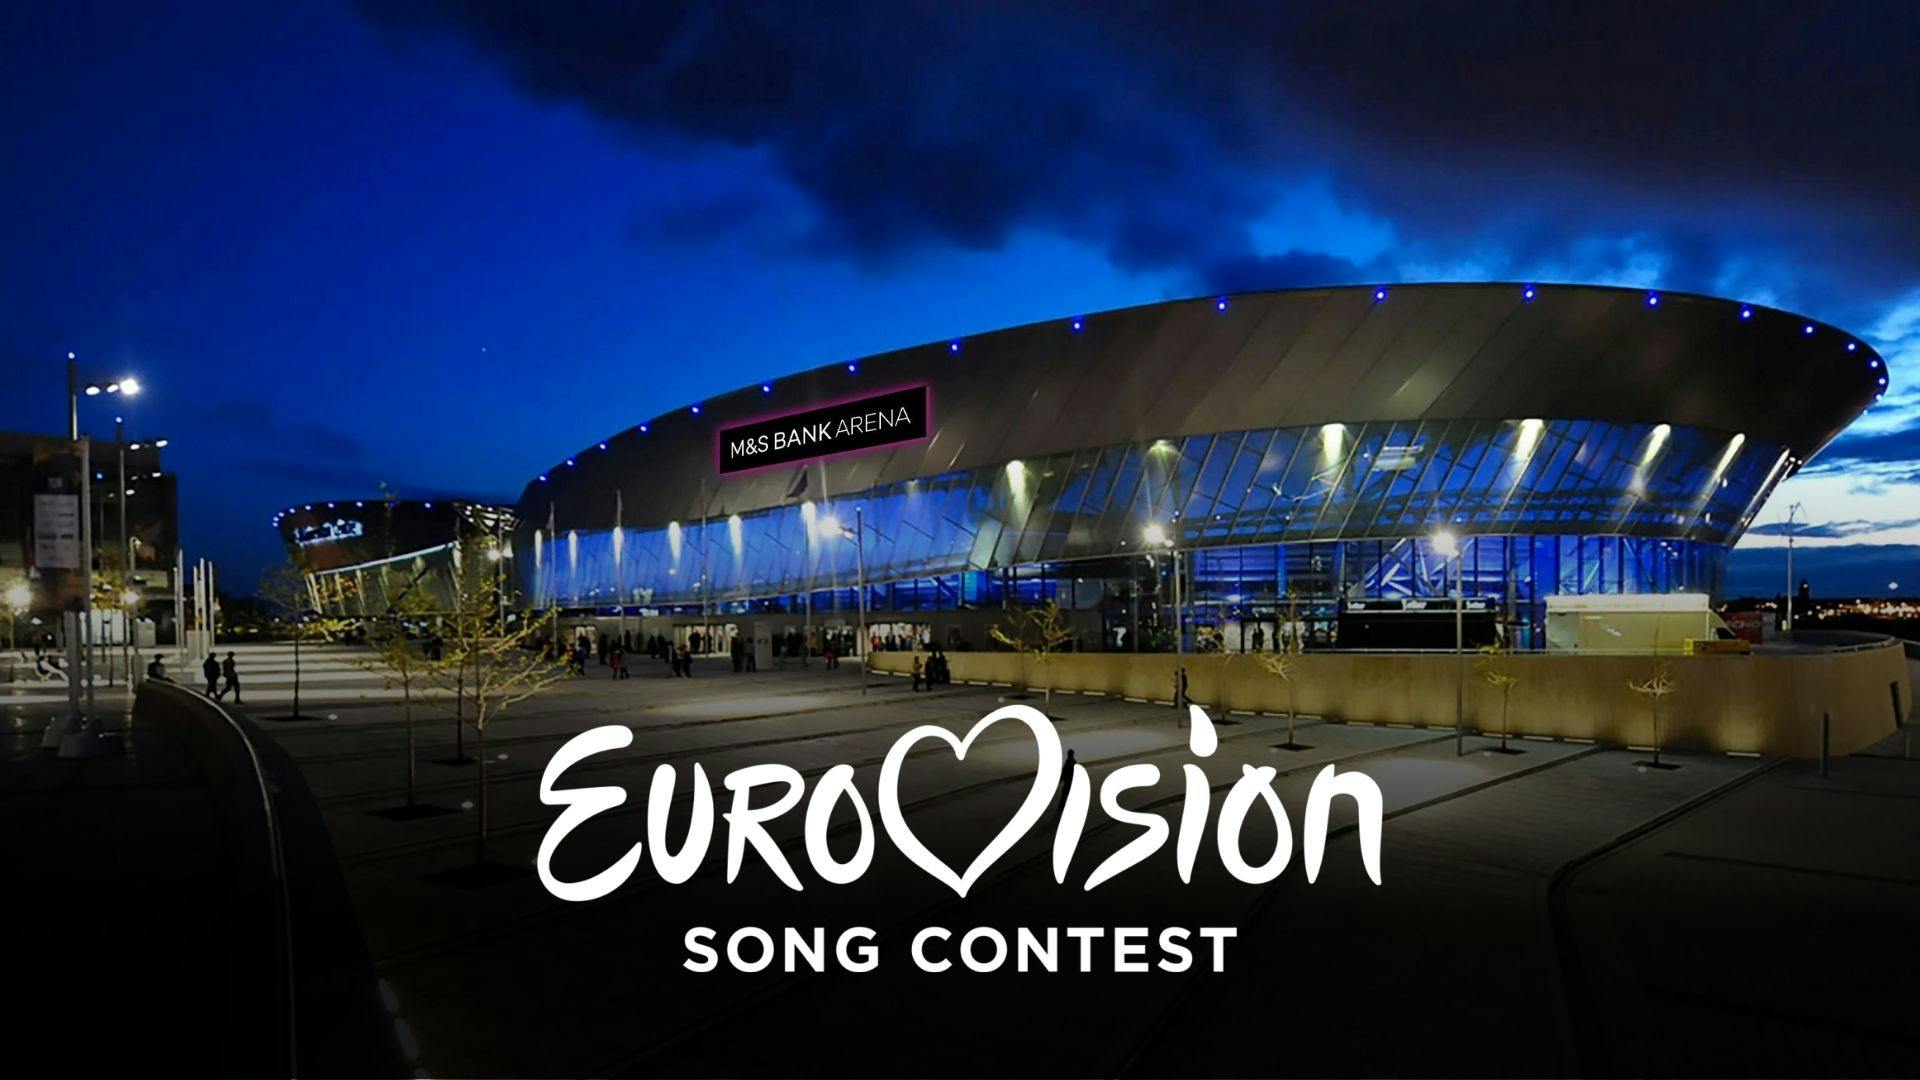 Image de nuit prise d’une des arènes qui a été utilisée pour l’eurovision